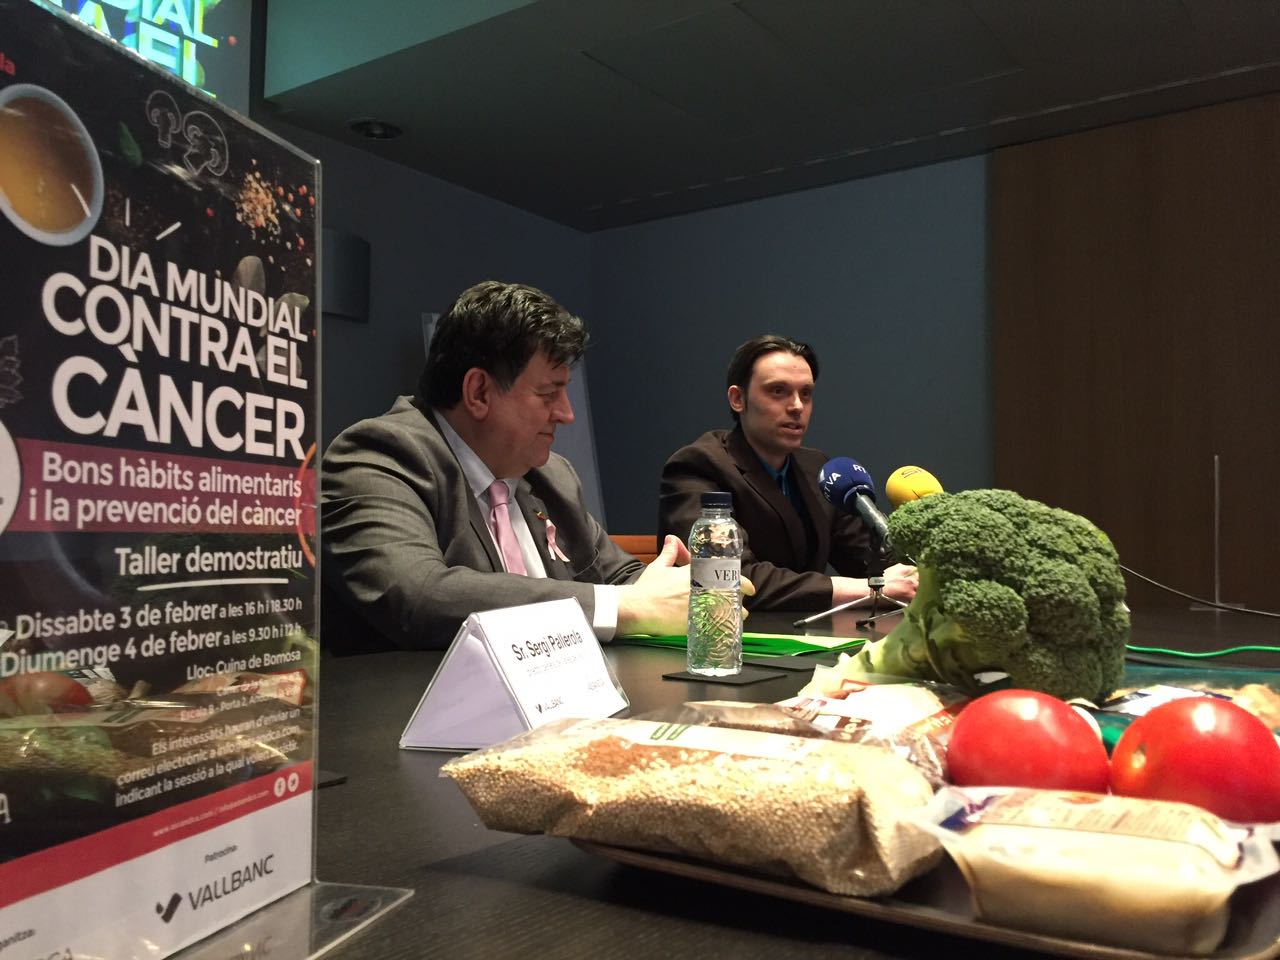 Presentació activitat "Agafa la paella pel mànec", Josep Saravia (President de Assandca) i Marc Gil (nurticionista de Bio Bio Restauració).